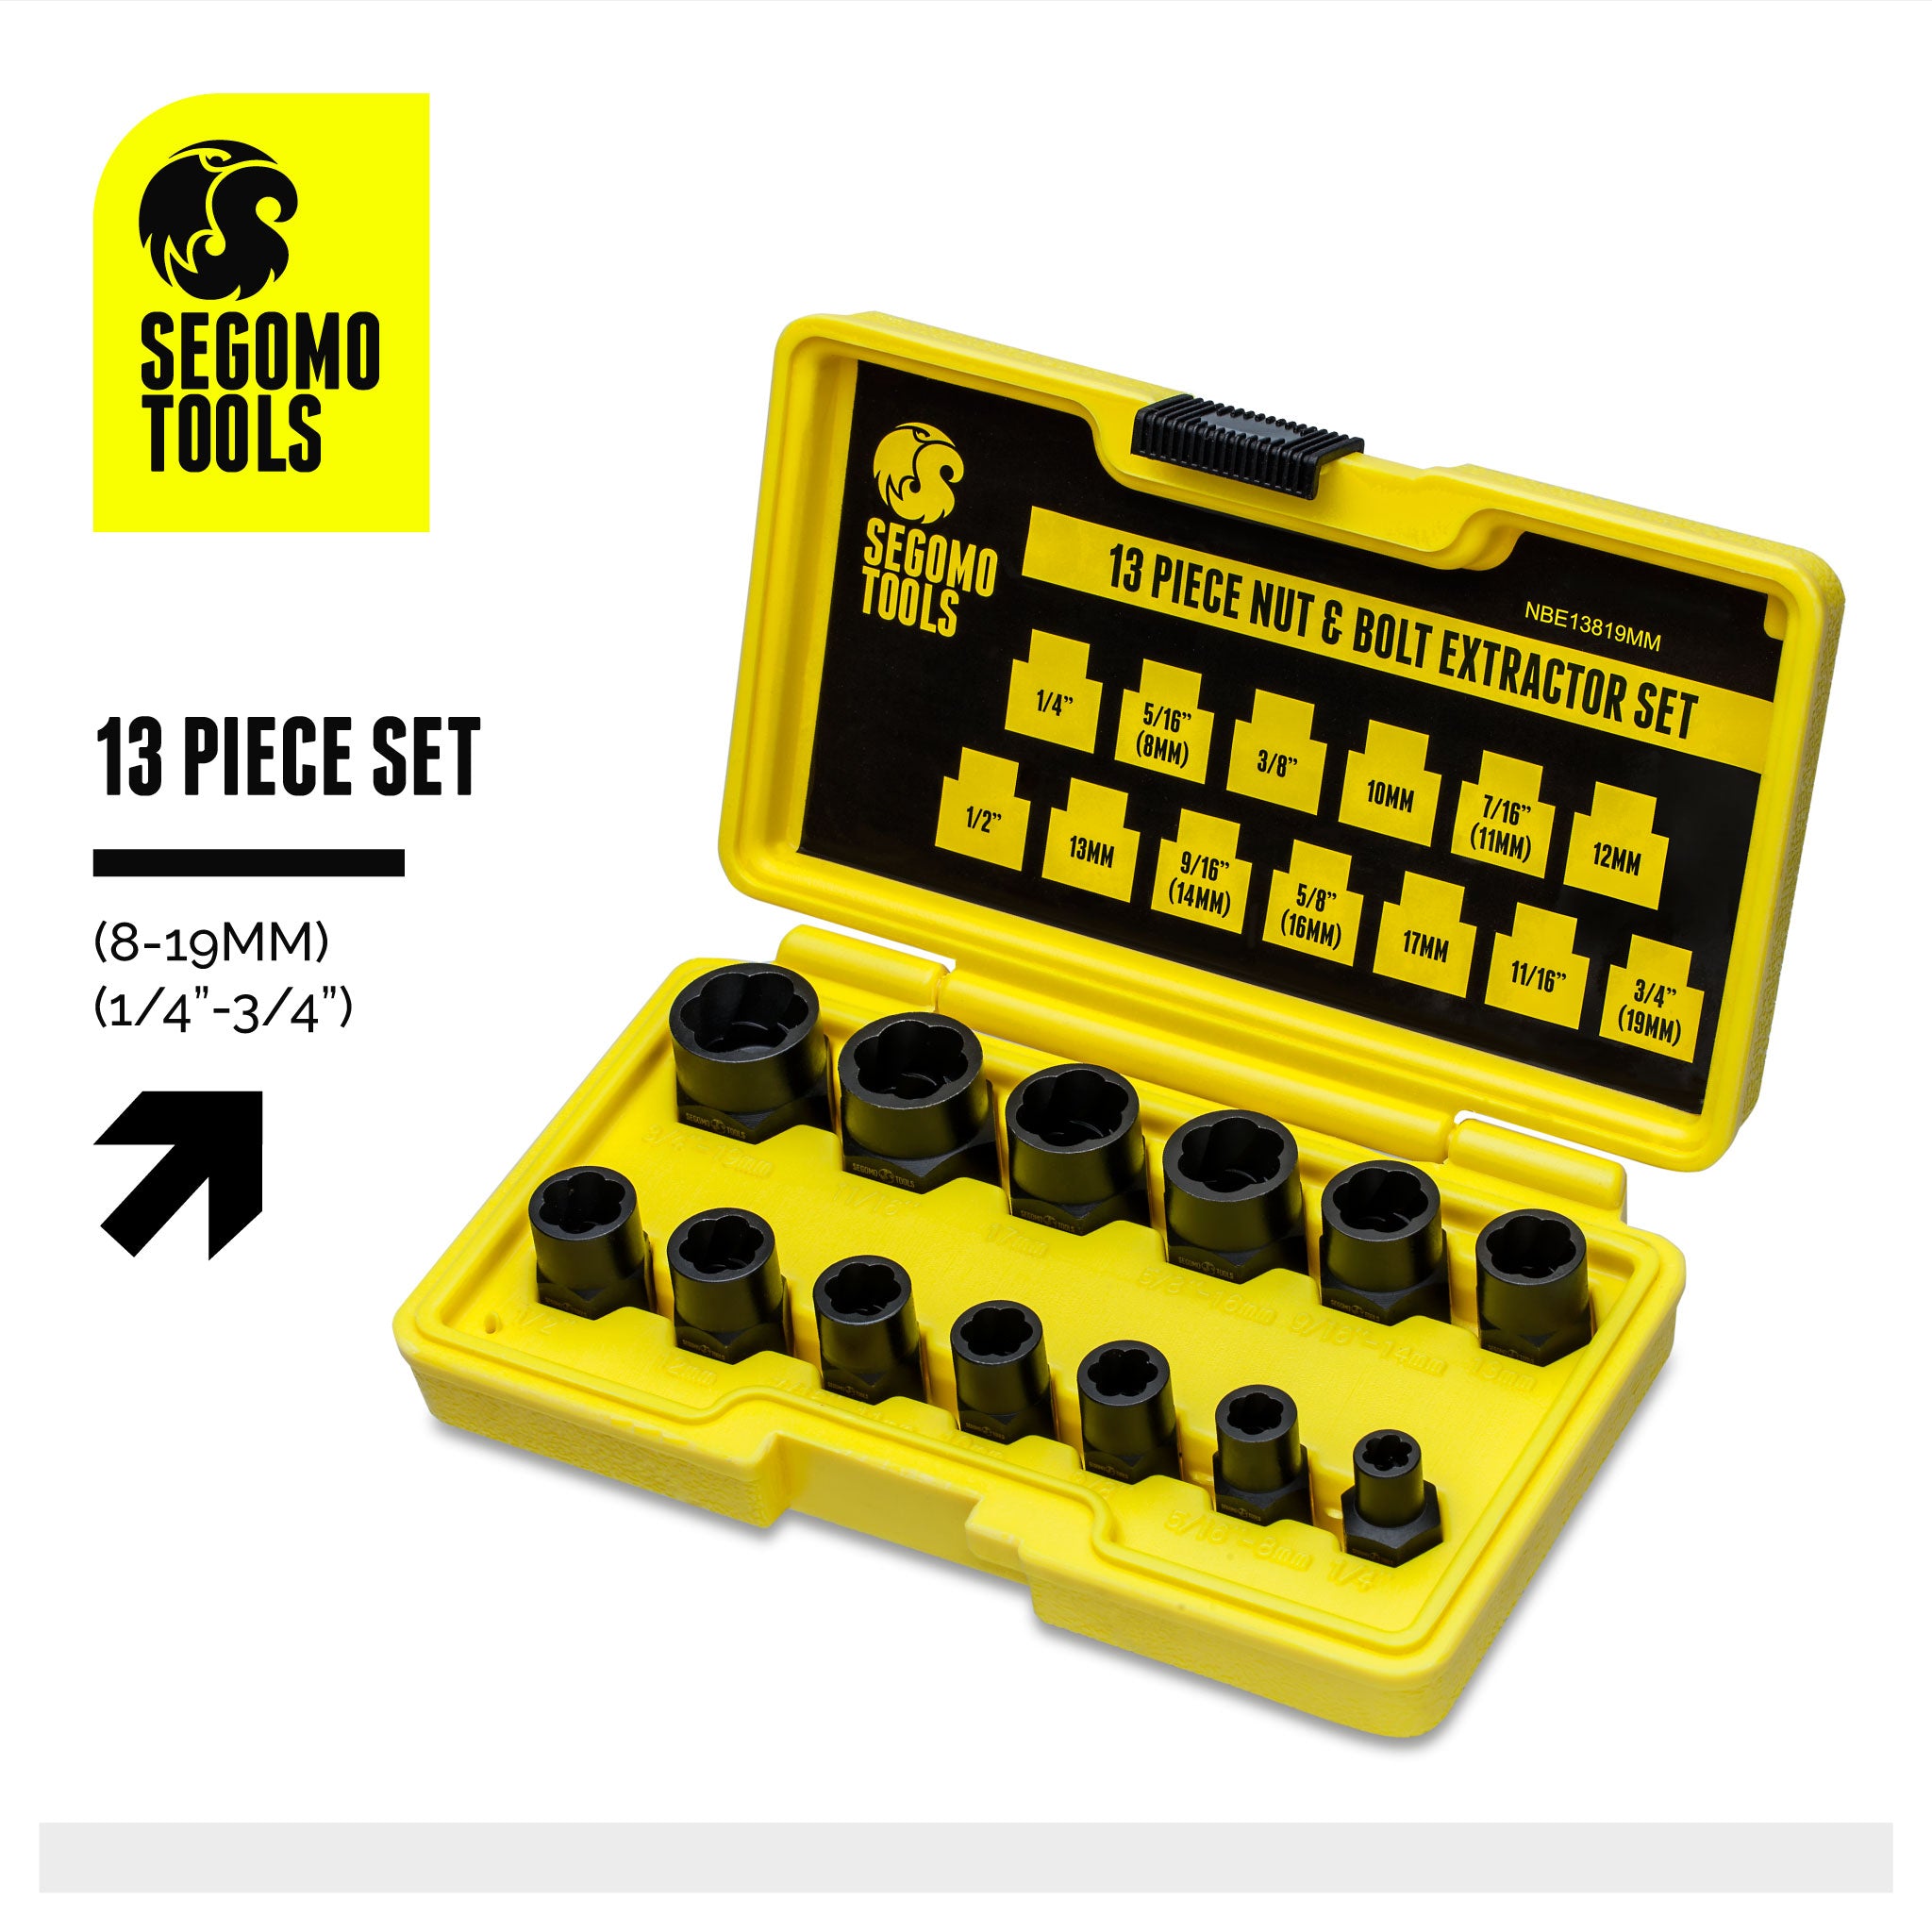 Segomo Tools 13 Piece Lug Nut and Bolt Extractor Removal Metric and SA